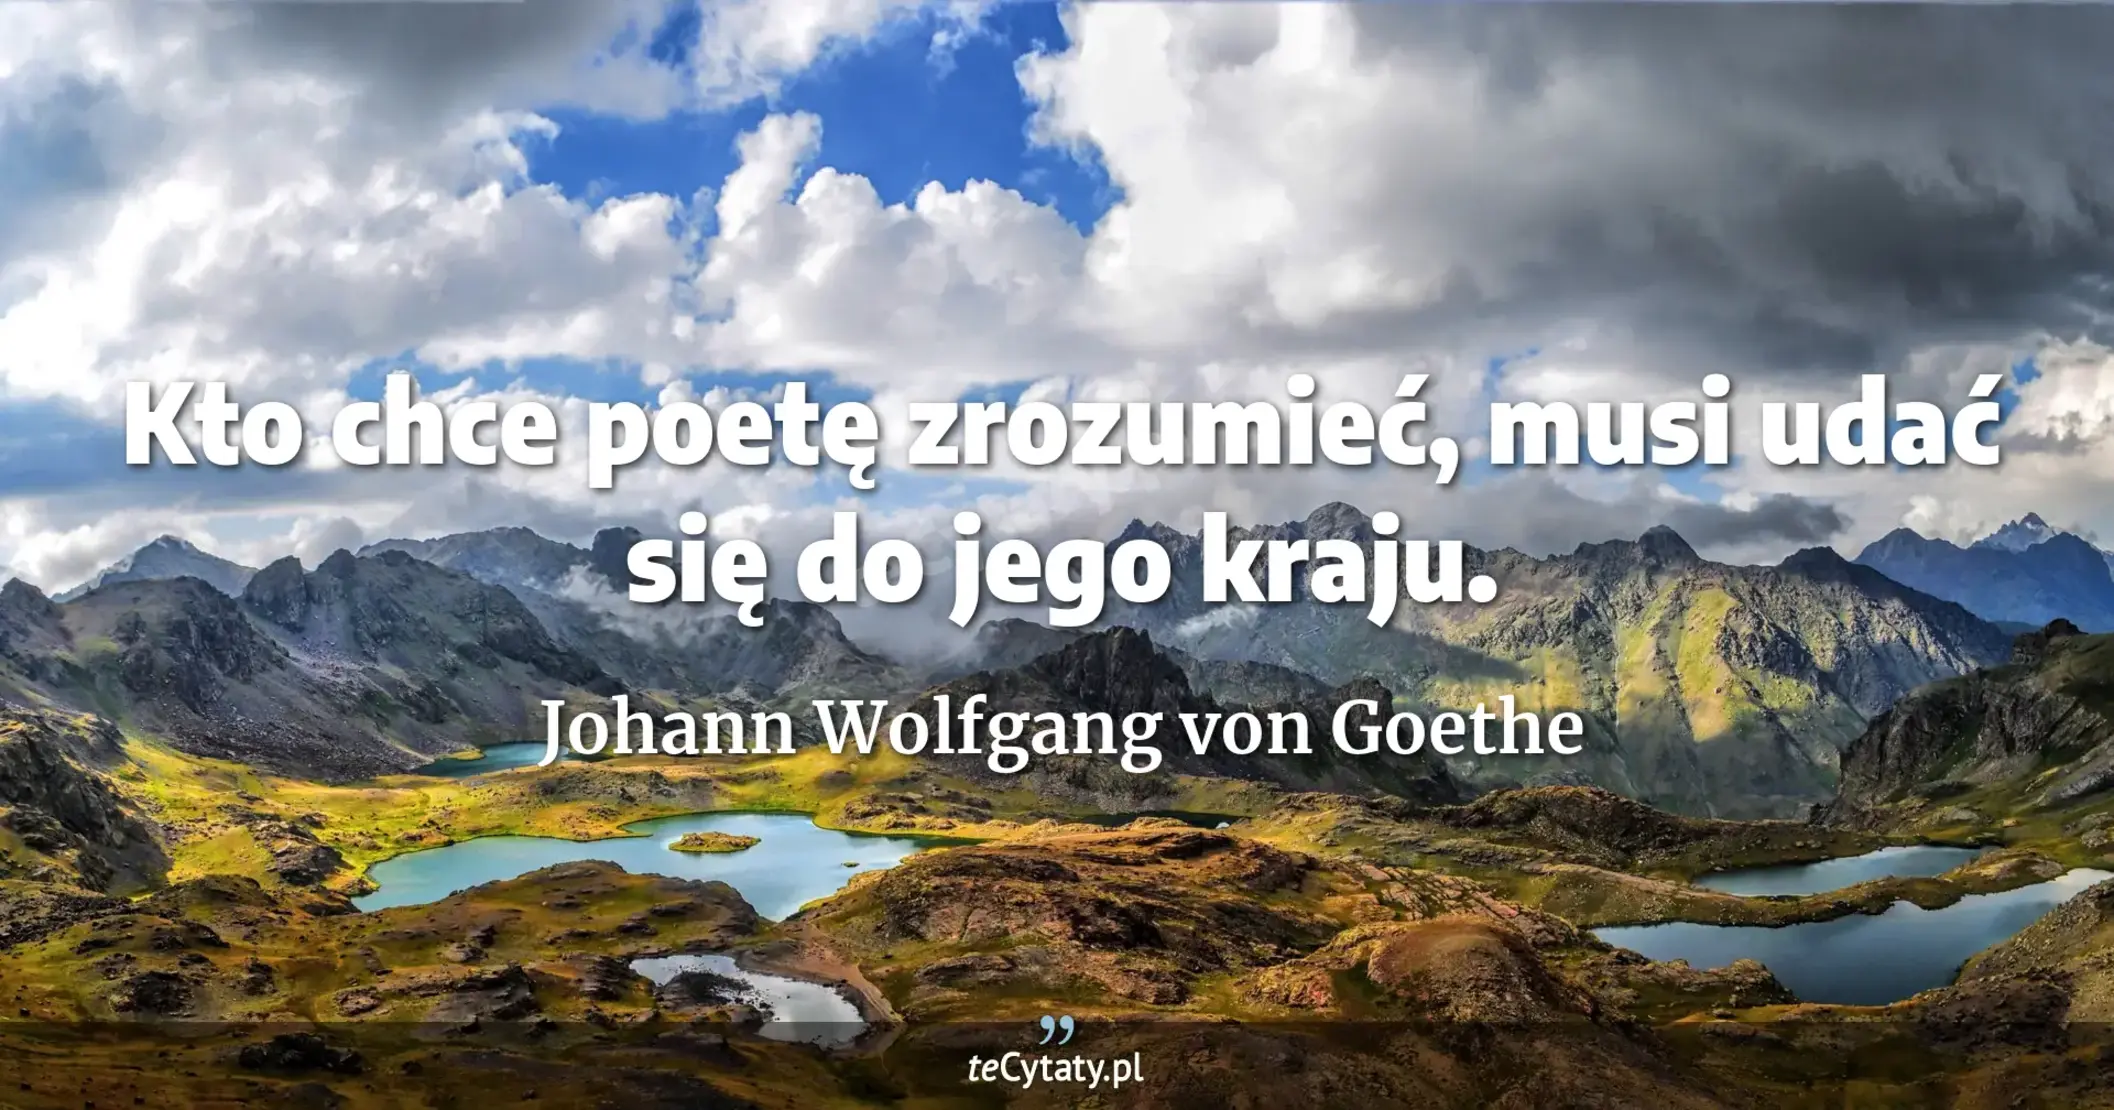 Kto chce poetę zrozumieć, musi udać się do jego kraju. - Johann Wolfgang von Goethe